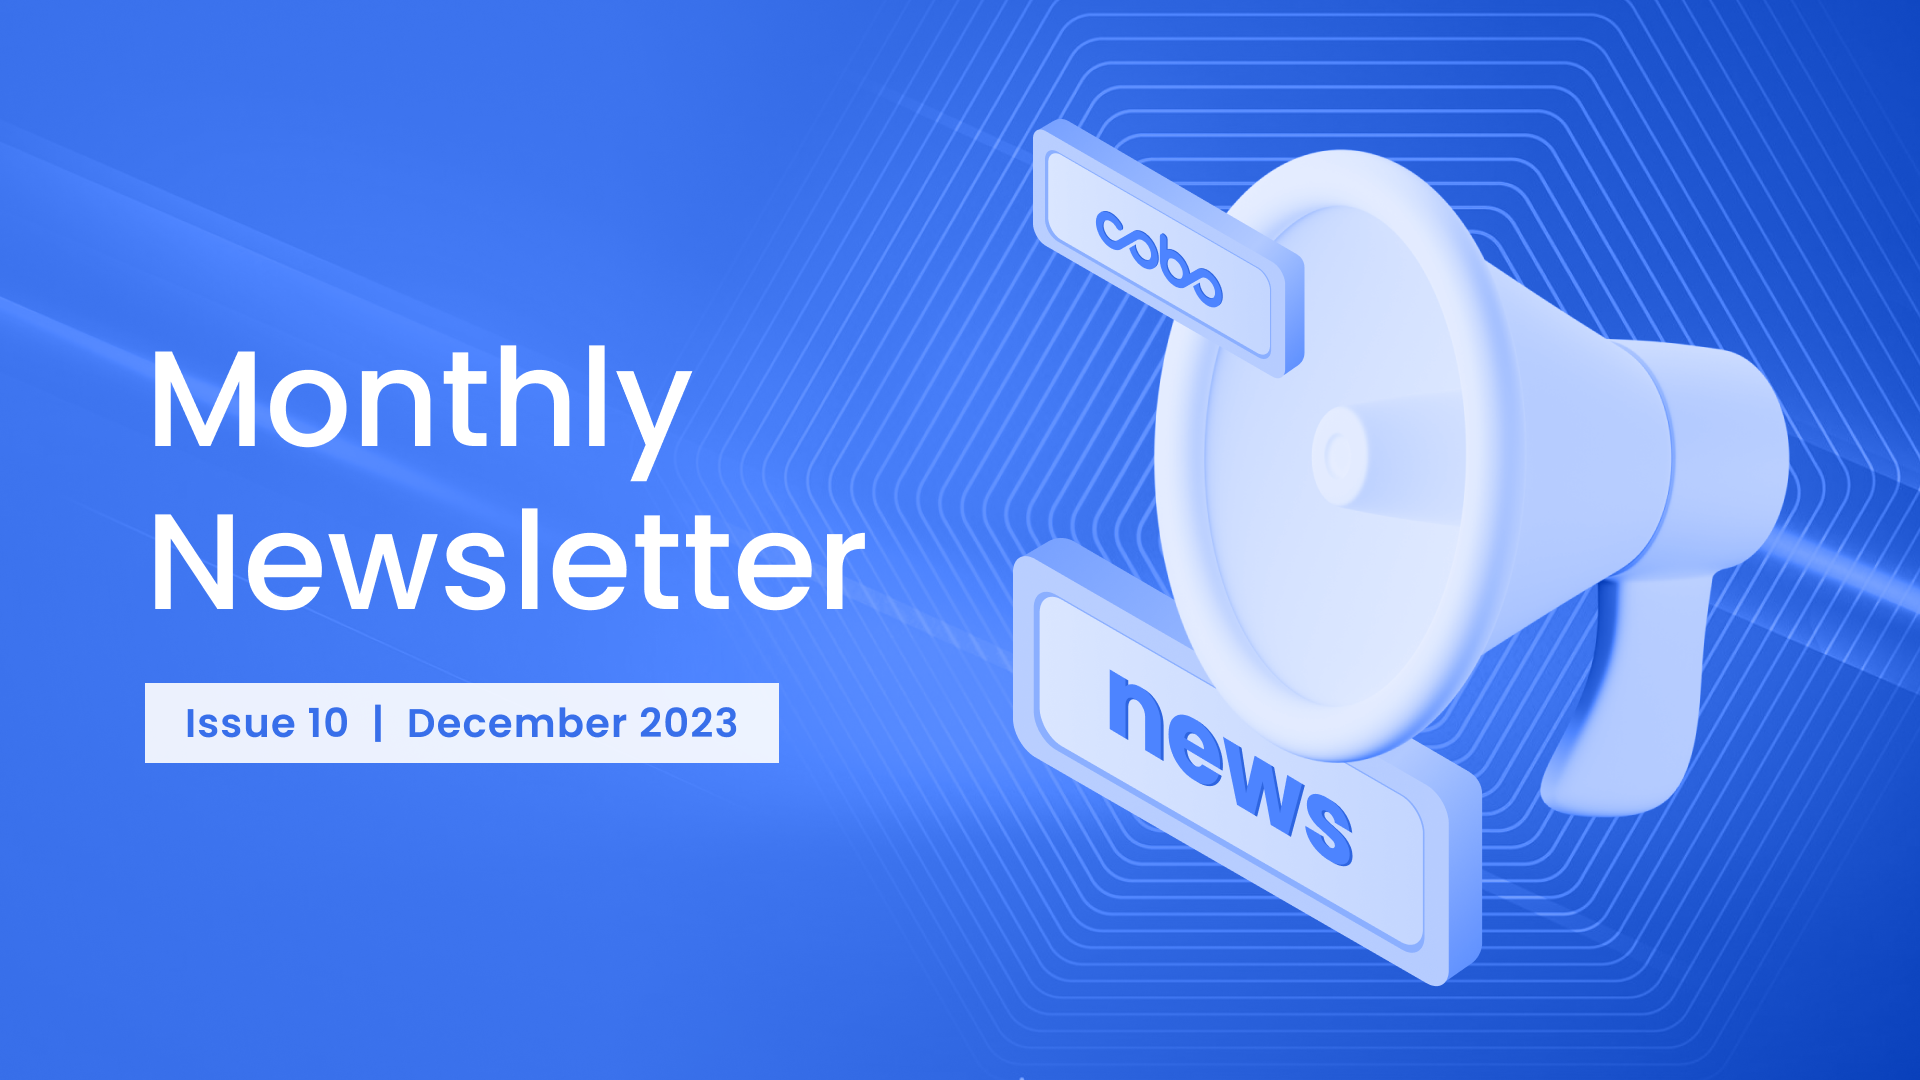 Cobo Monthly Newsletter - December 2023